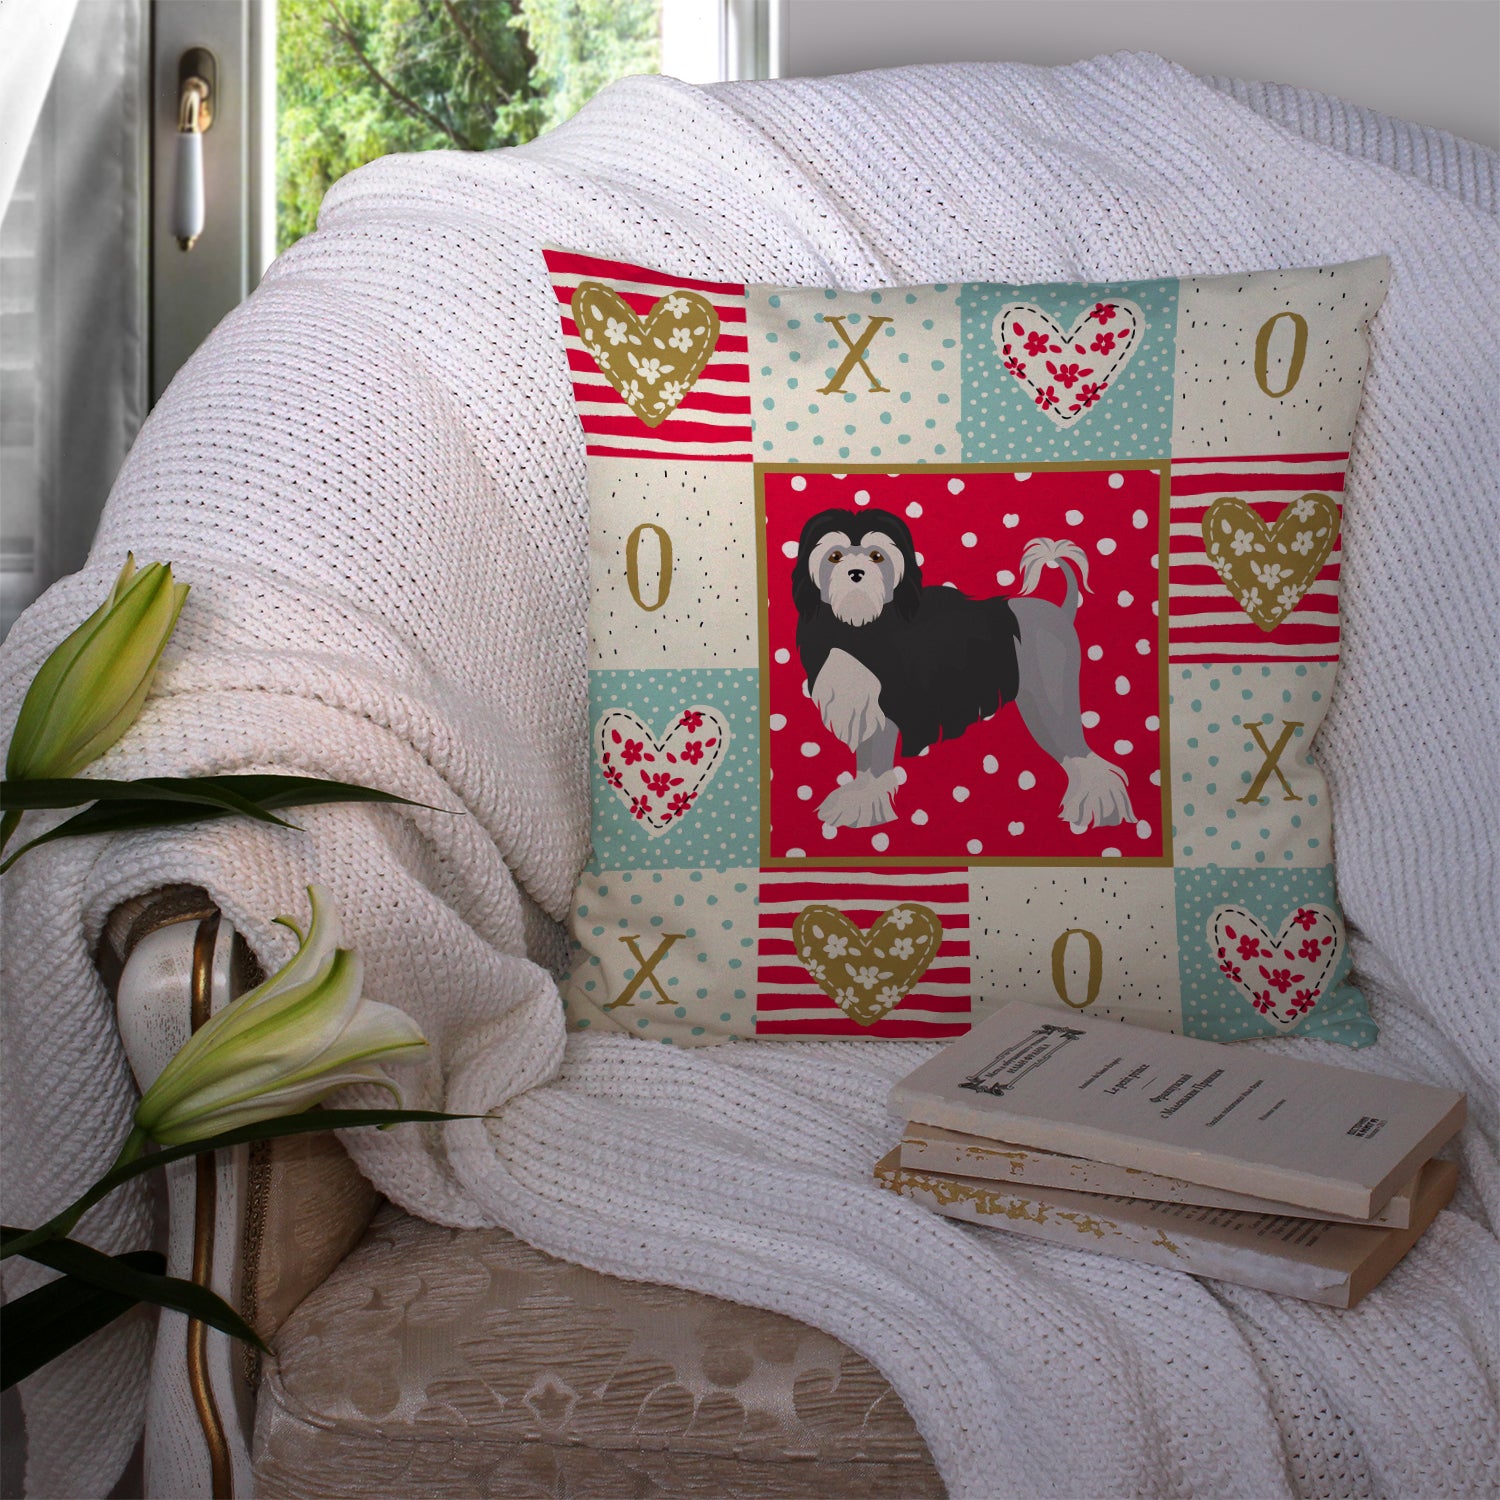 Lowchen Little Lion Dog #2 Love Fabric Decorative Pillow CK5859PW1414 - the-store.com